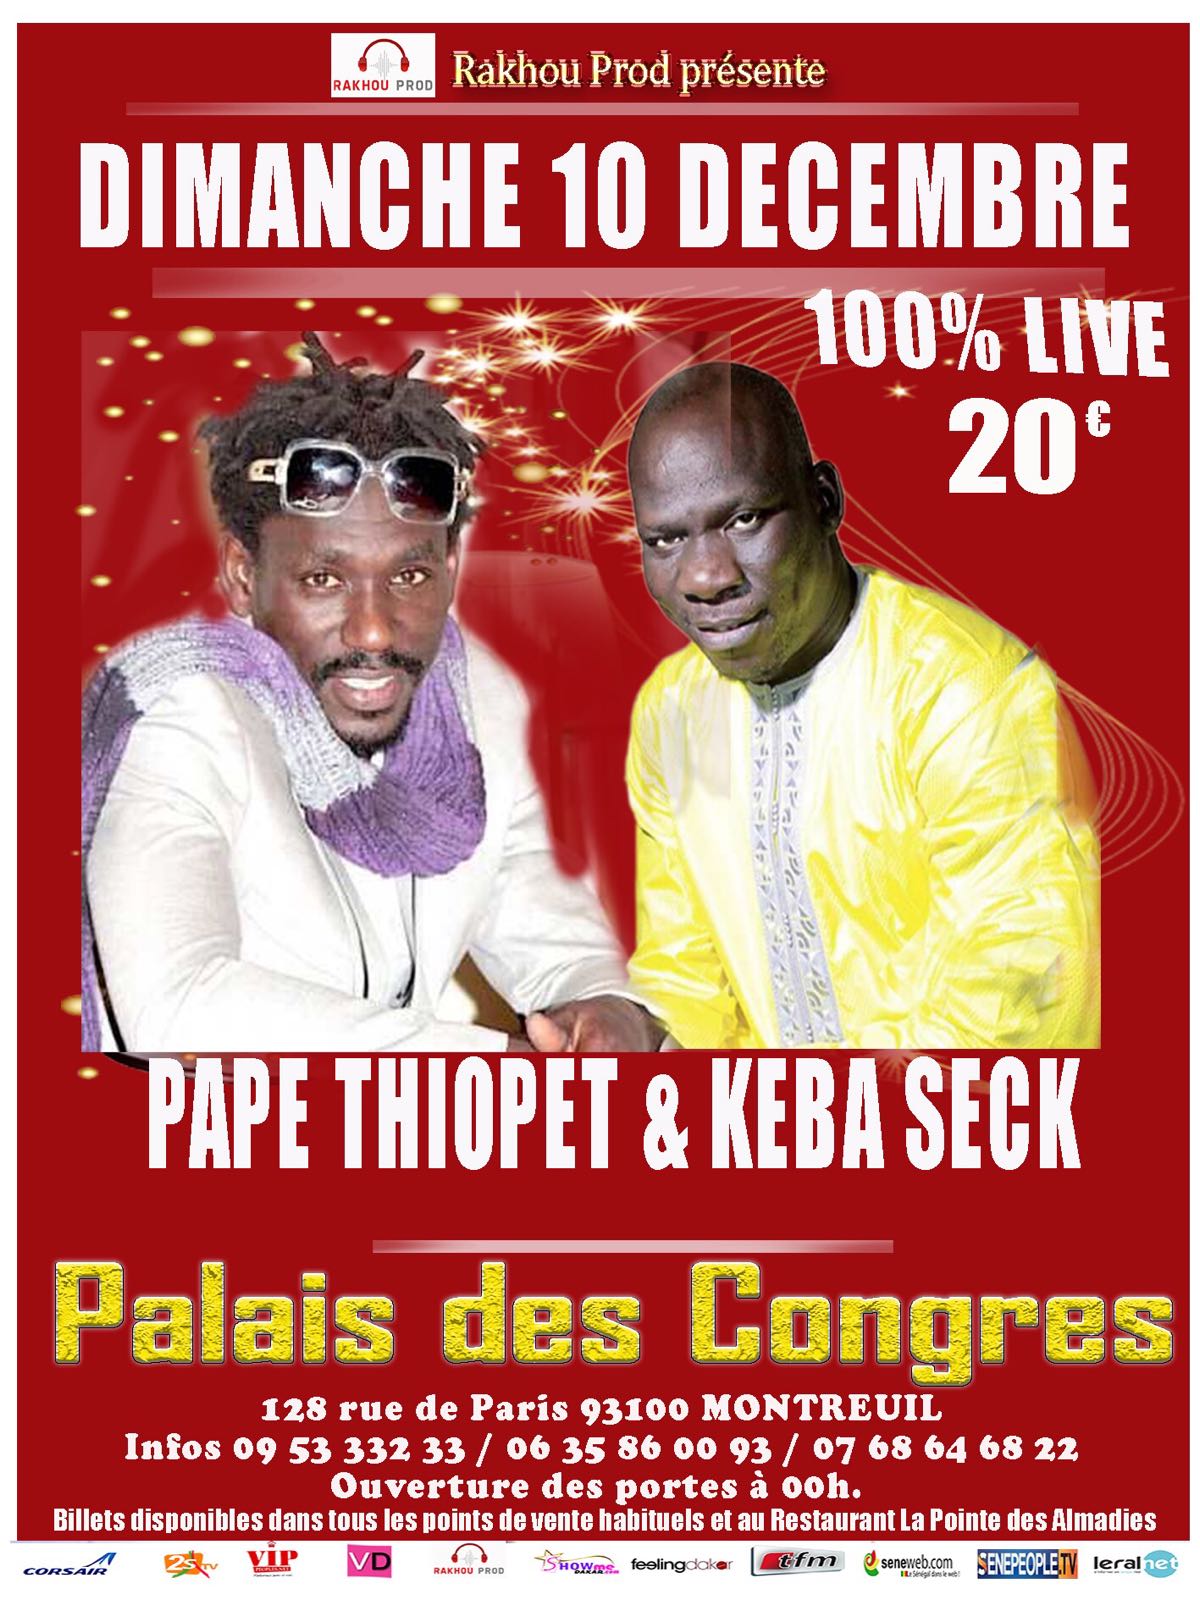 Live au Palais des Congrés de Montreuil, Pape Ndiaye Thiopet et Keba Seck ce dimanche 10 décembre.Entrée 20 euros